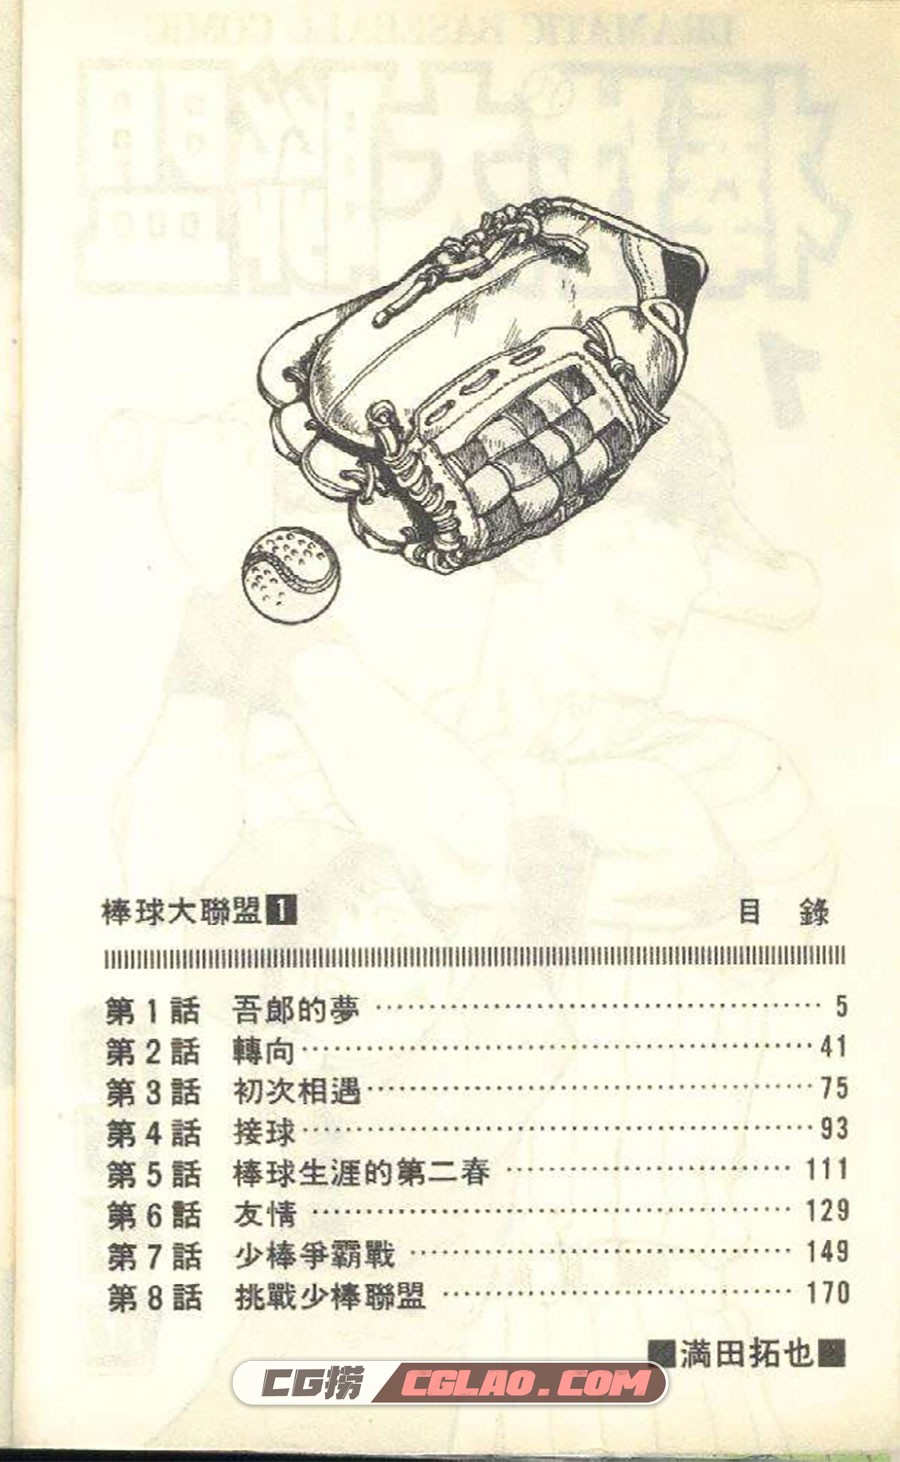 棒球大联盟 满田拓也 1-78卷 漫画全集下载 百度网盘下载,0003.jpg